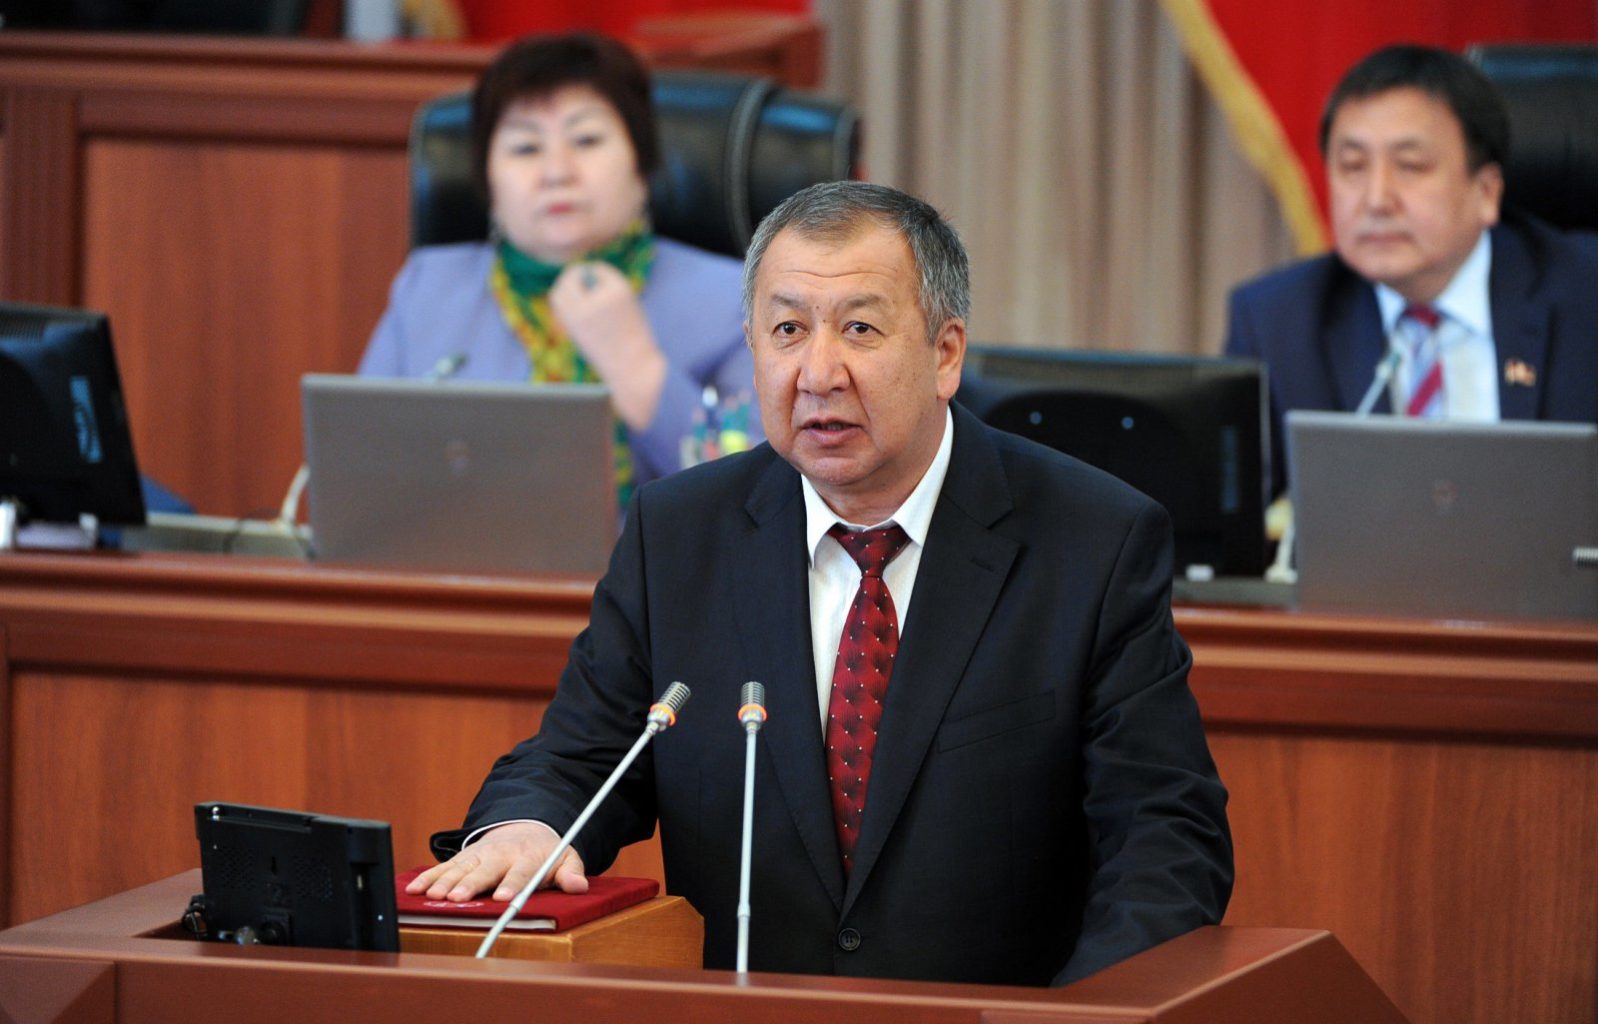 В 5 тысяч сомов обошлась маска премьер-министру Кыргызстана